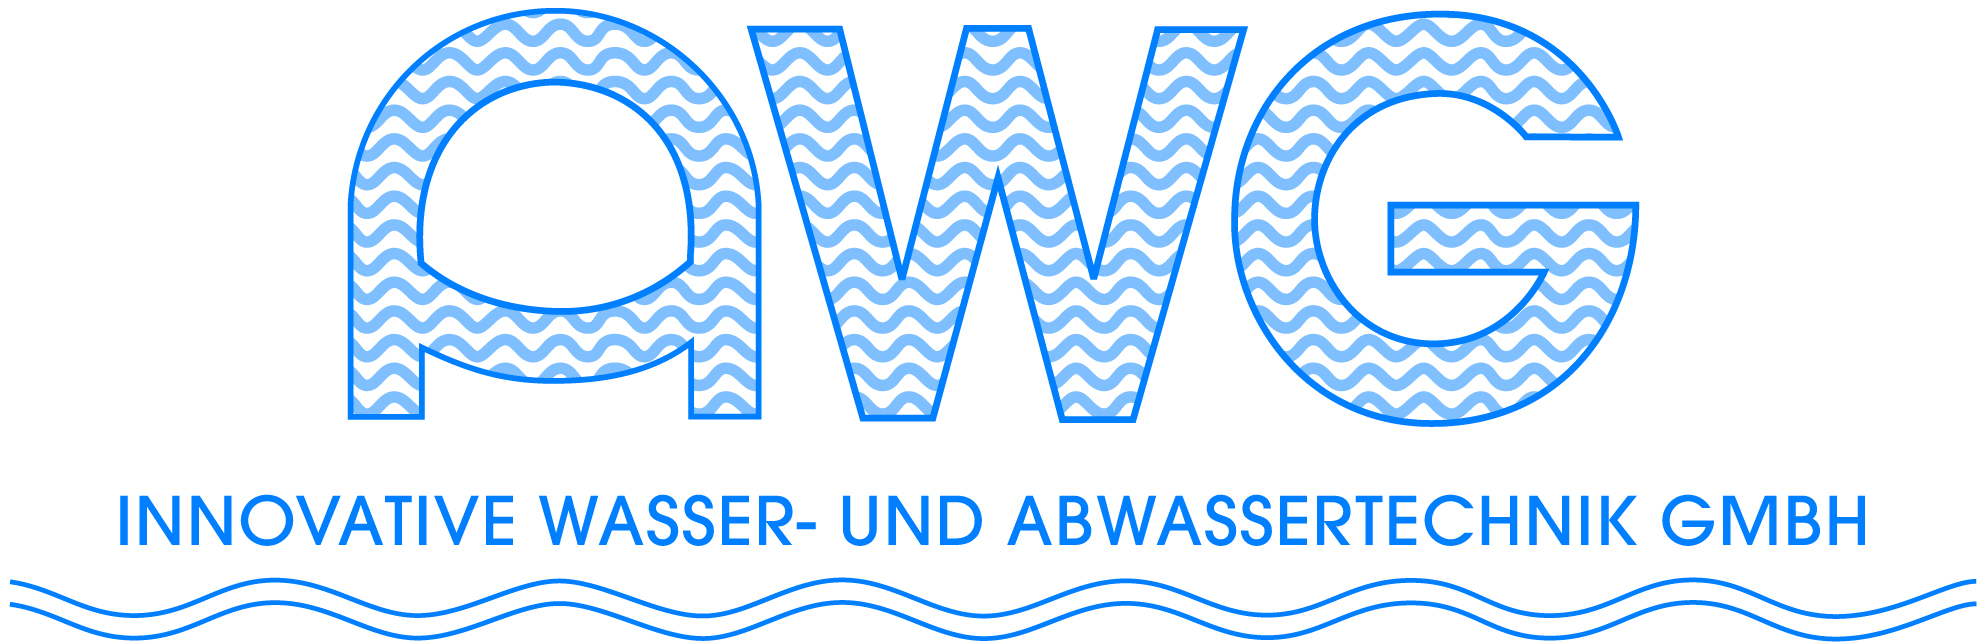 Old AWG logo